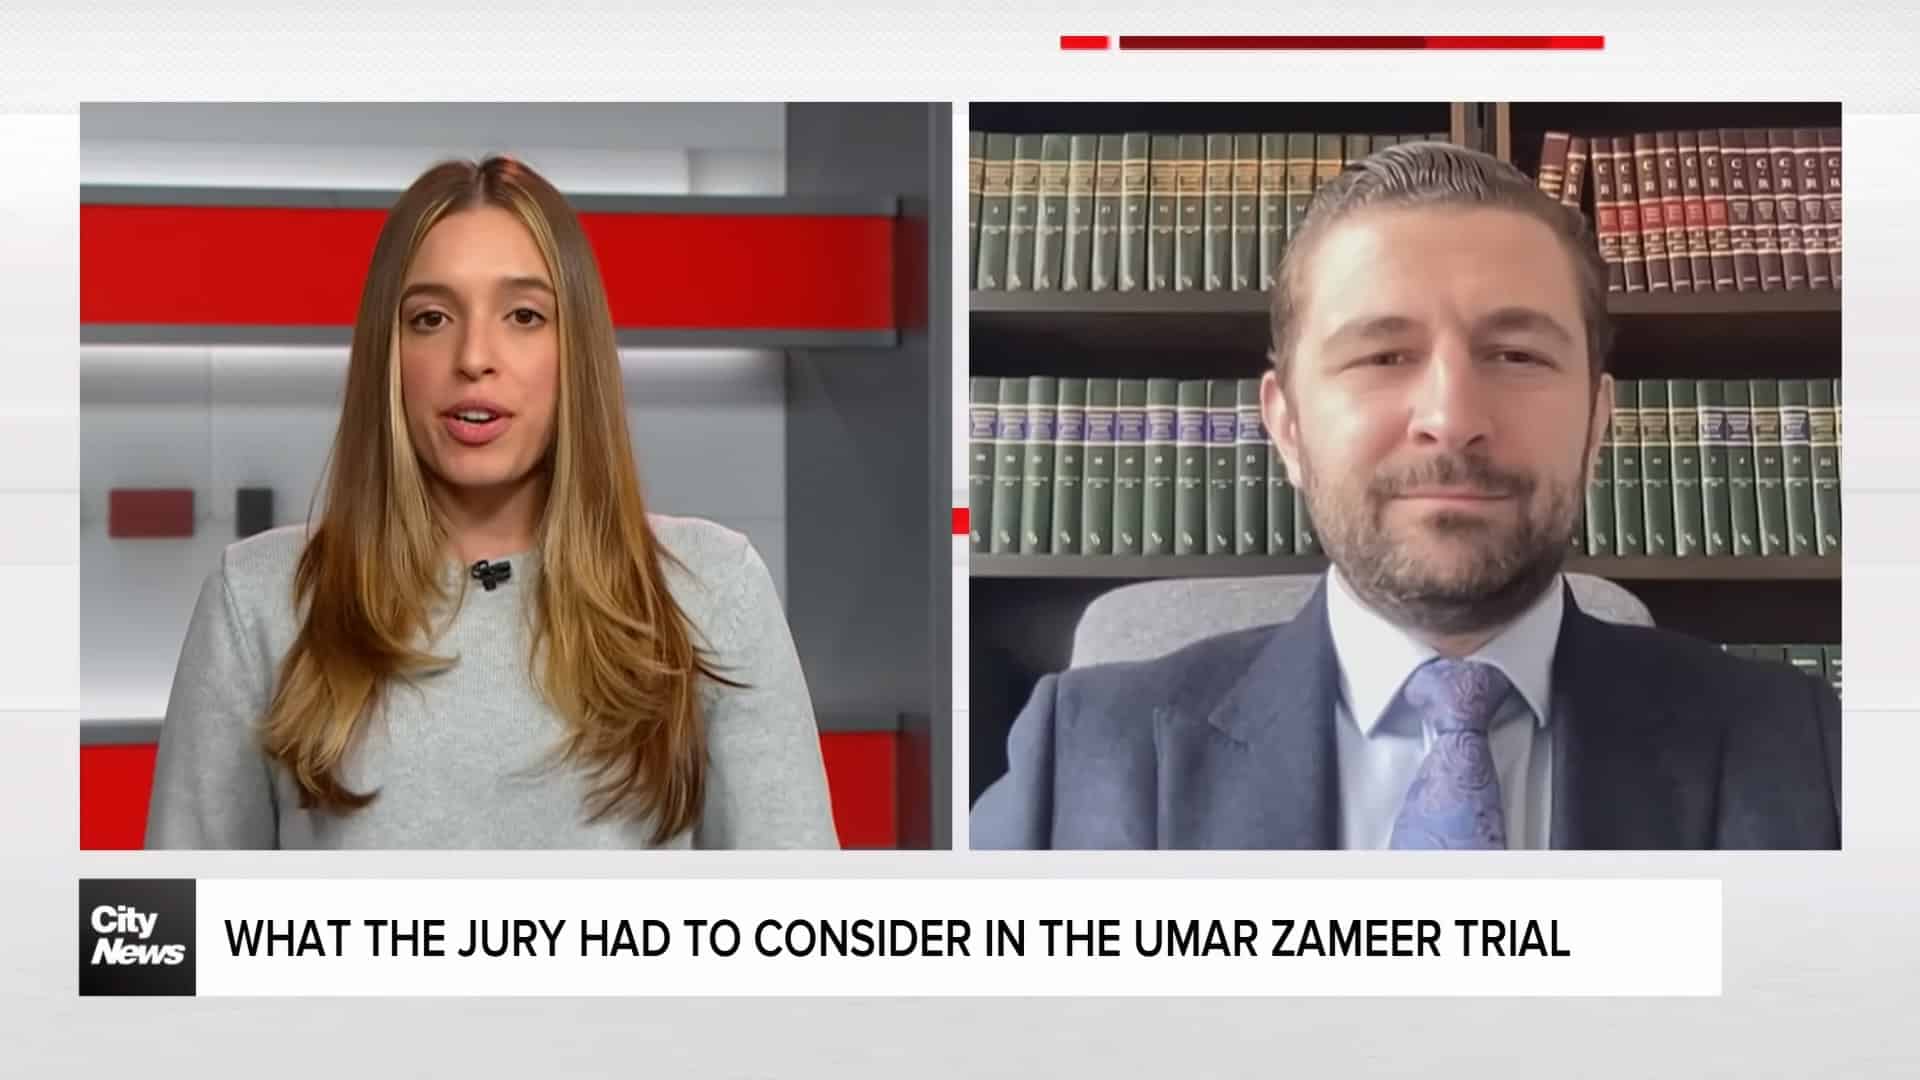 Alex Karapancev Criminal Defence Lawyer interviewed on the Zameer Murder Acquittal